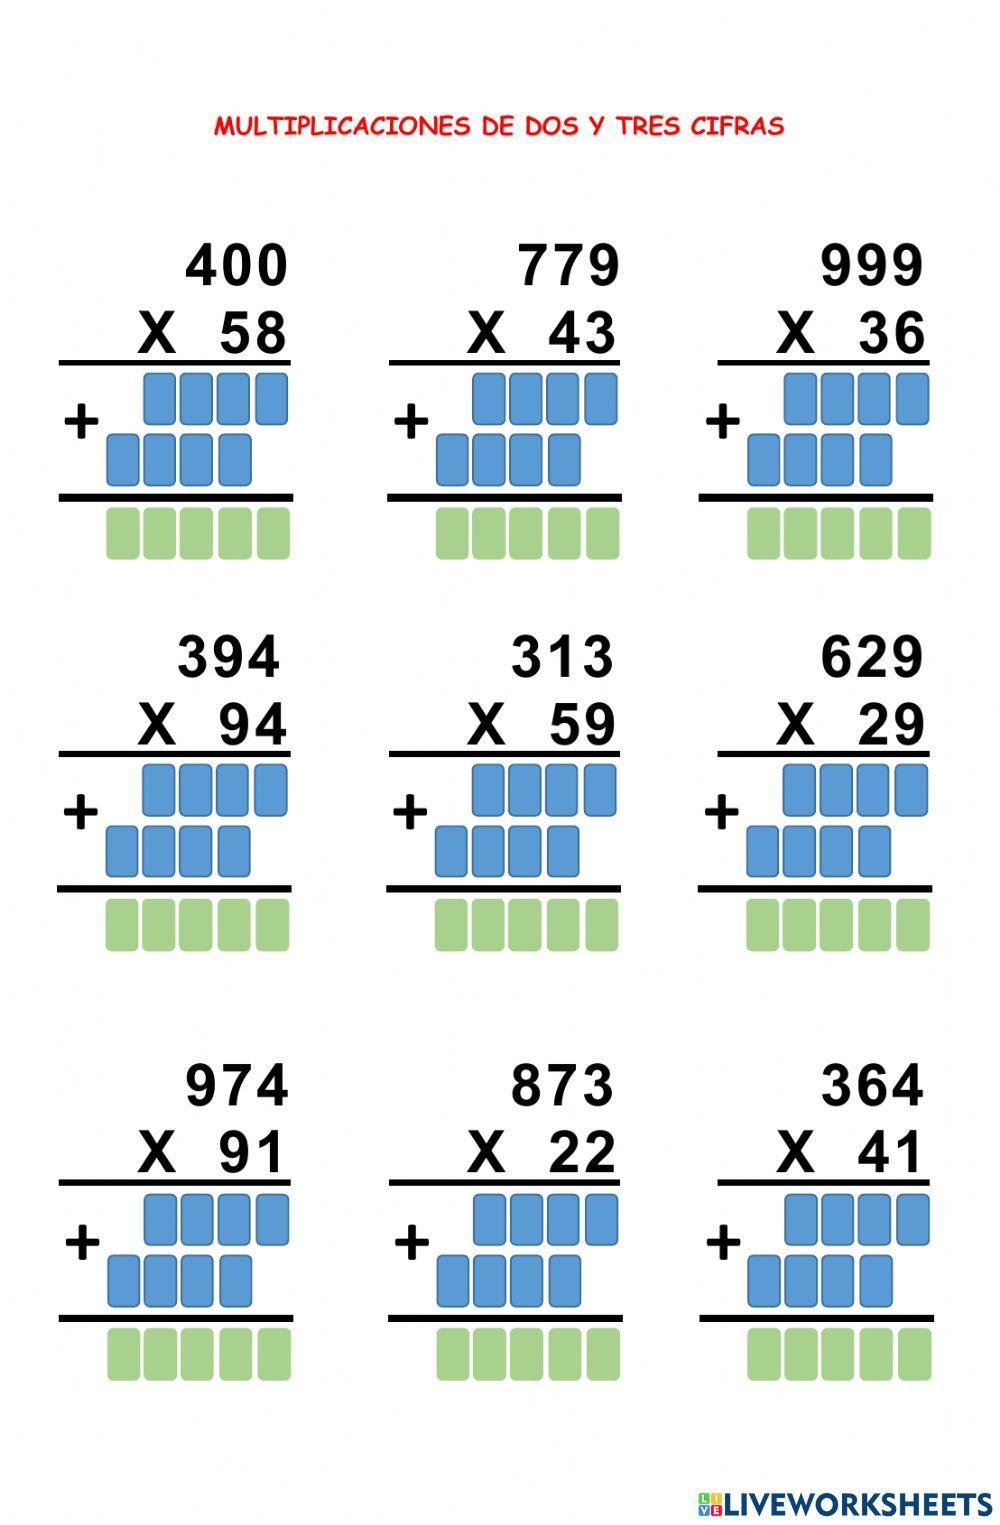 Multiplicaciones tres x dos cifras